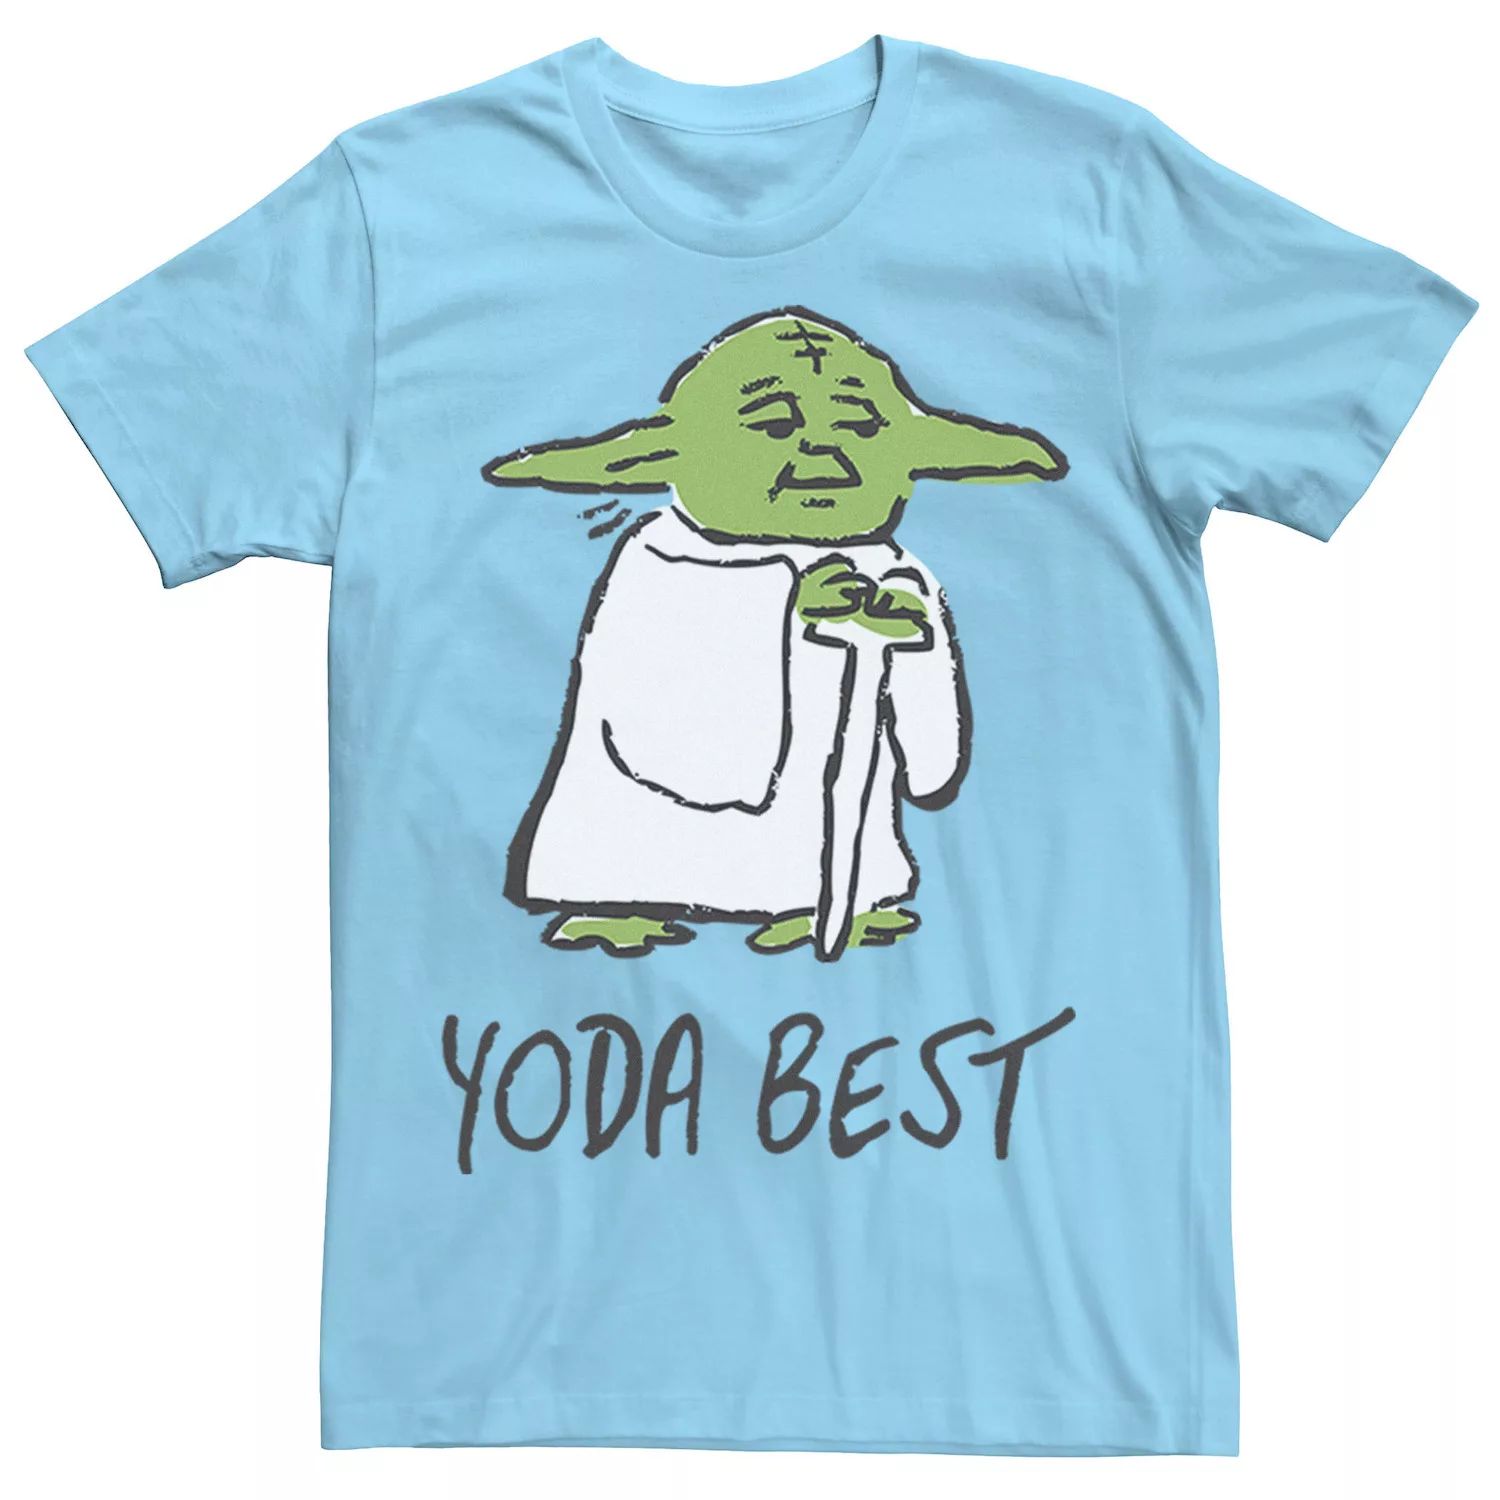 Мужская футболка с лучшим портретным эскизом «Звездные войны Йода» Star Wars, светло-синий